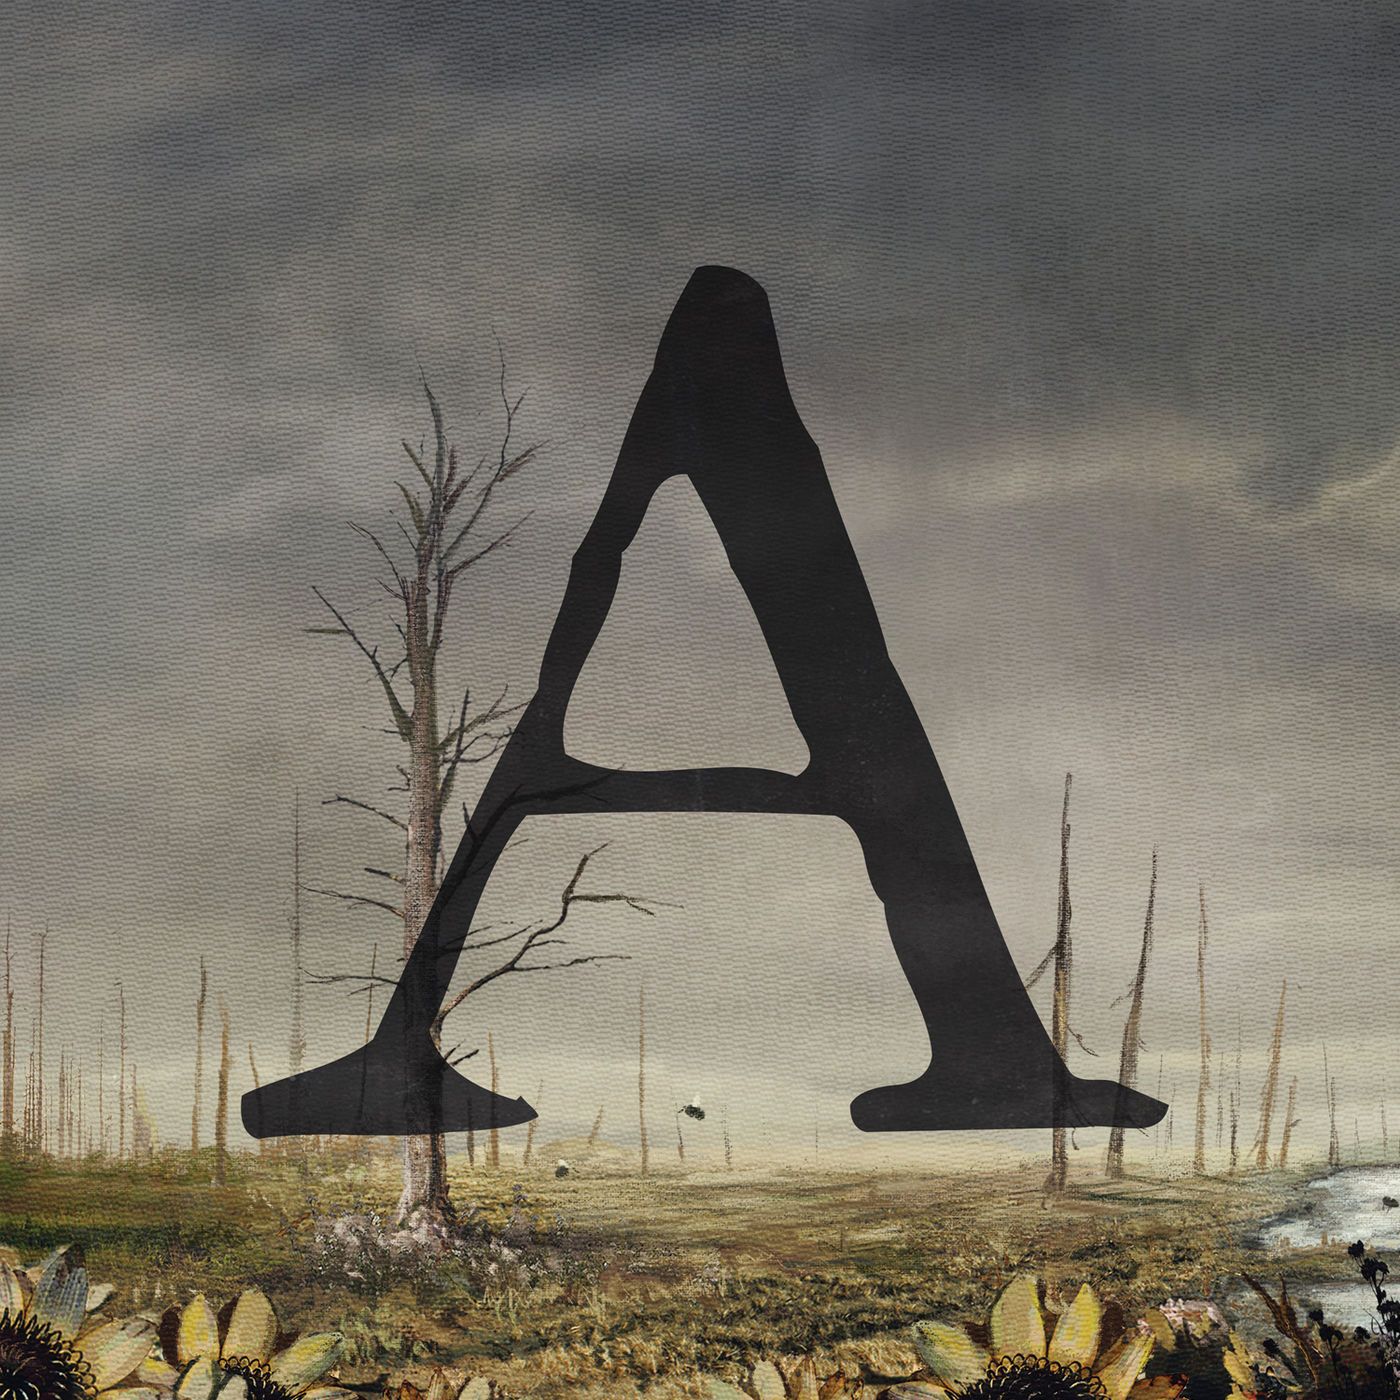 'A'-Single als 7" und digital rausgebracht